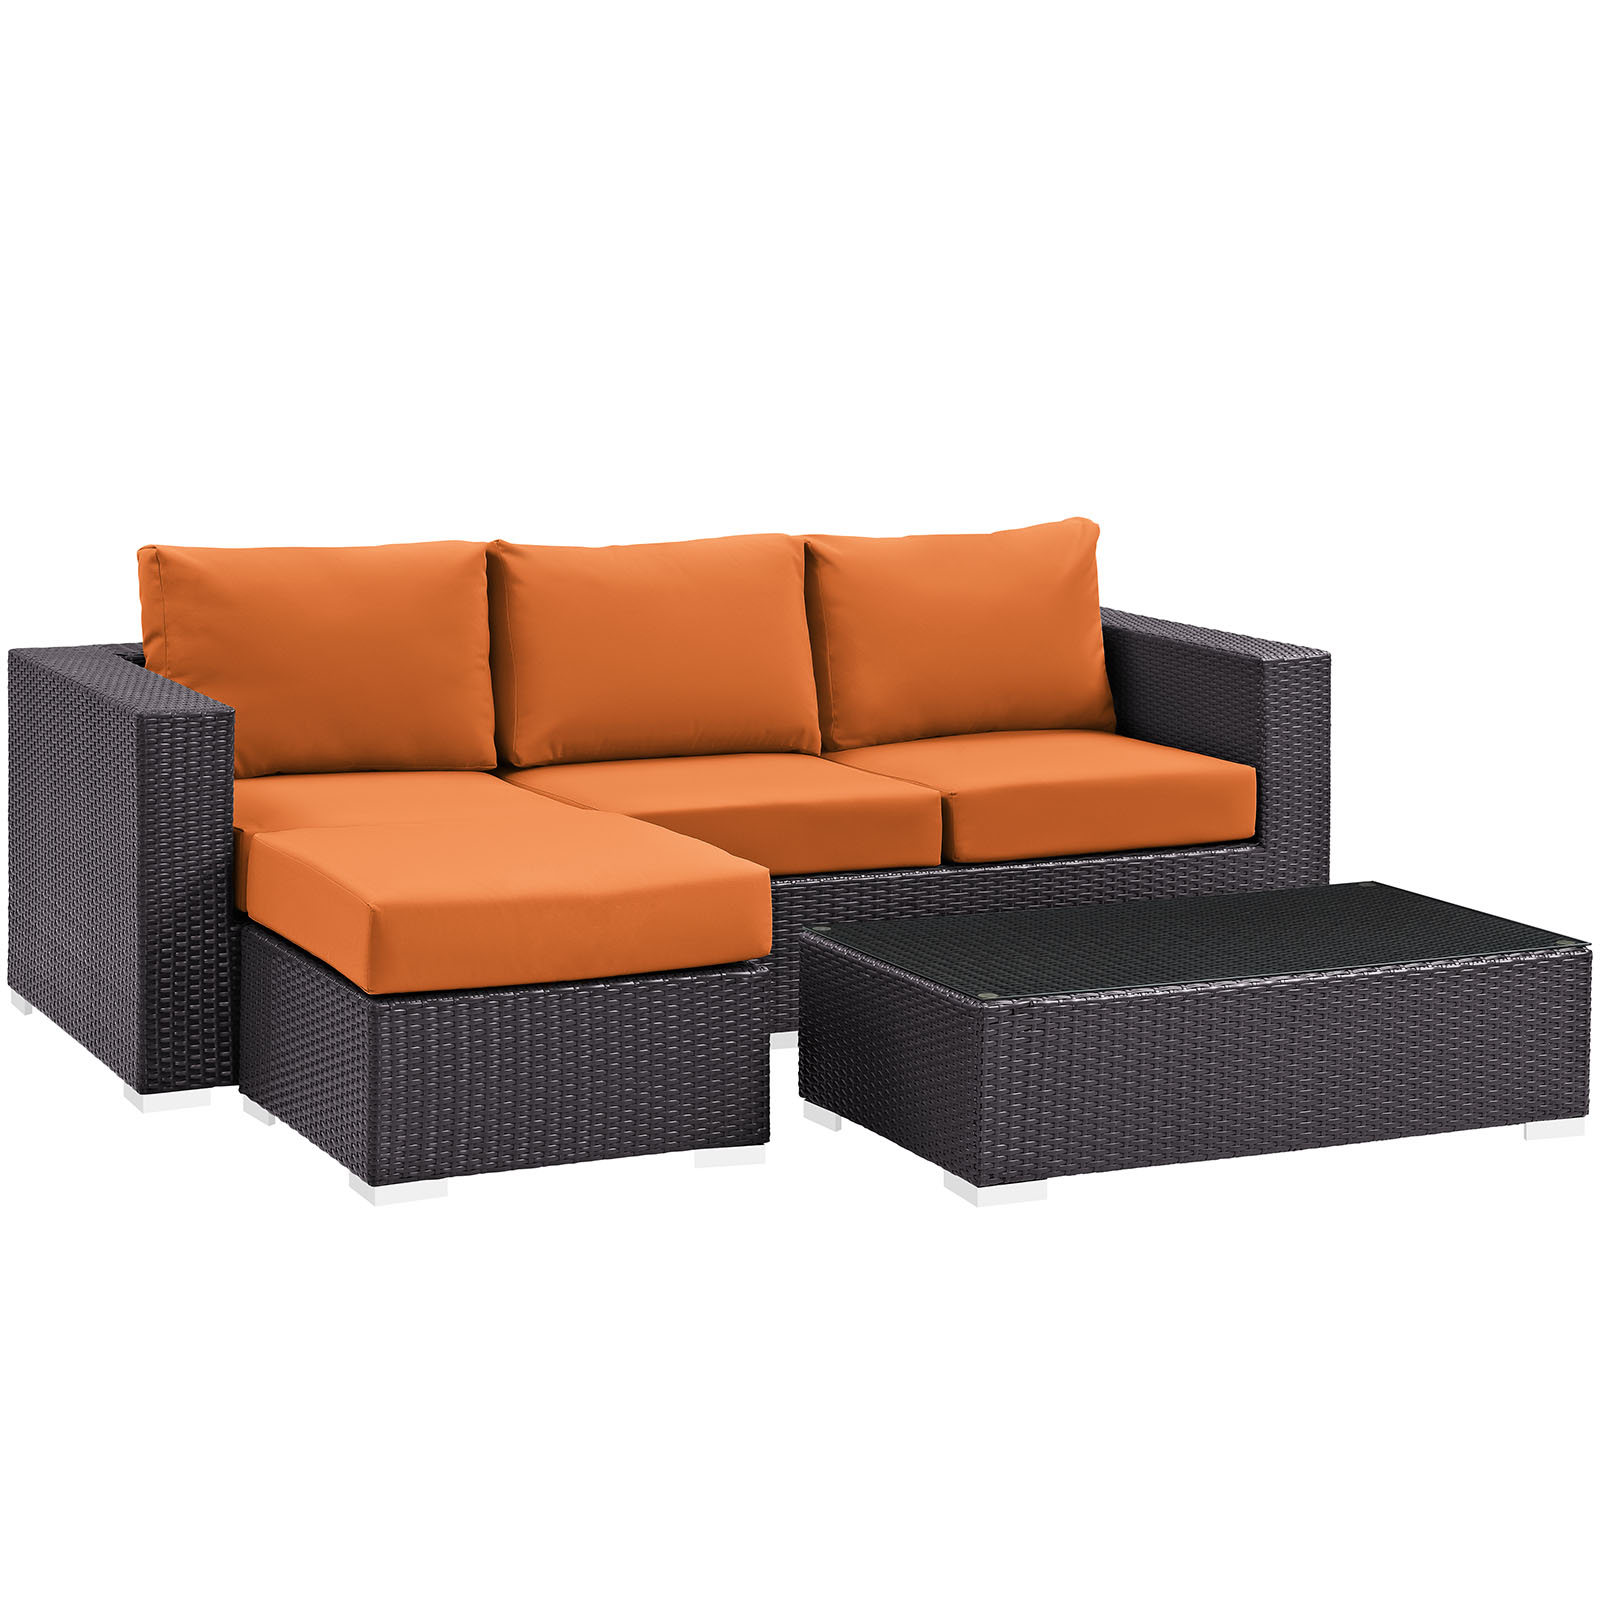 Modway Convene 3 Piece Outdoor Patio Sofa Set in Espresso Orange - image 3 of 7